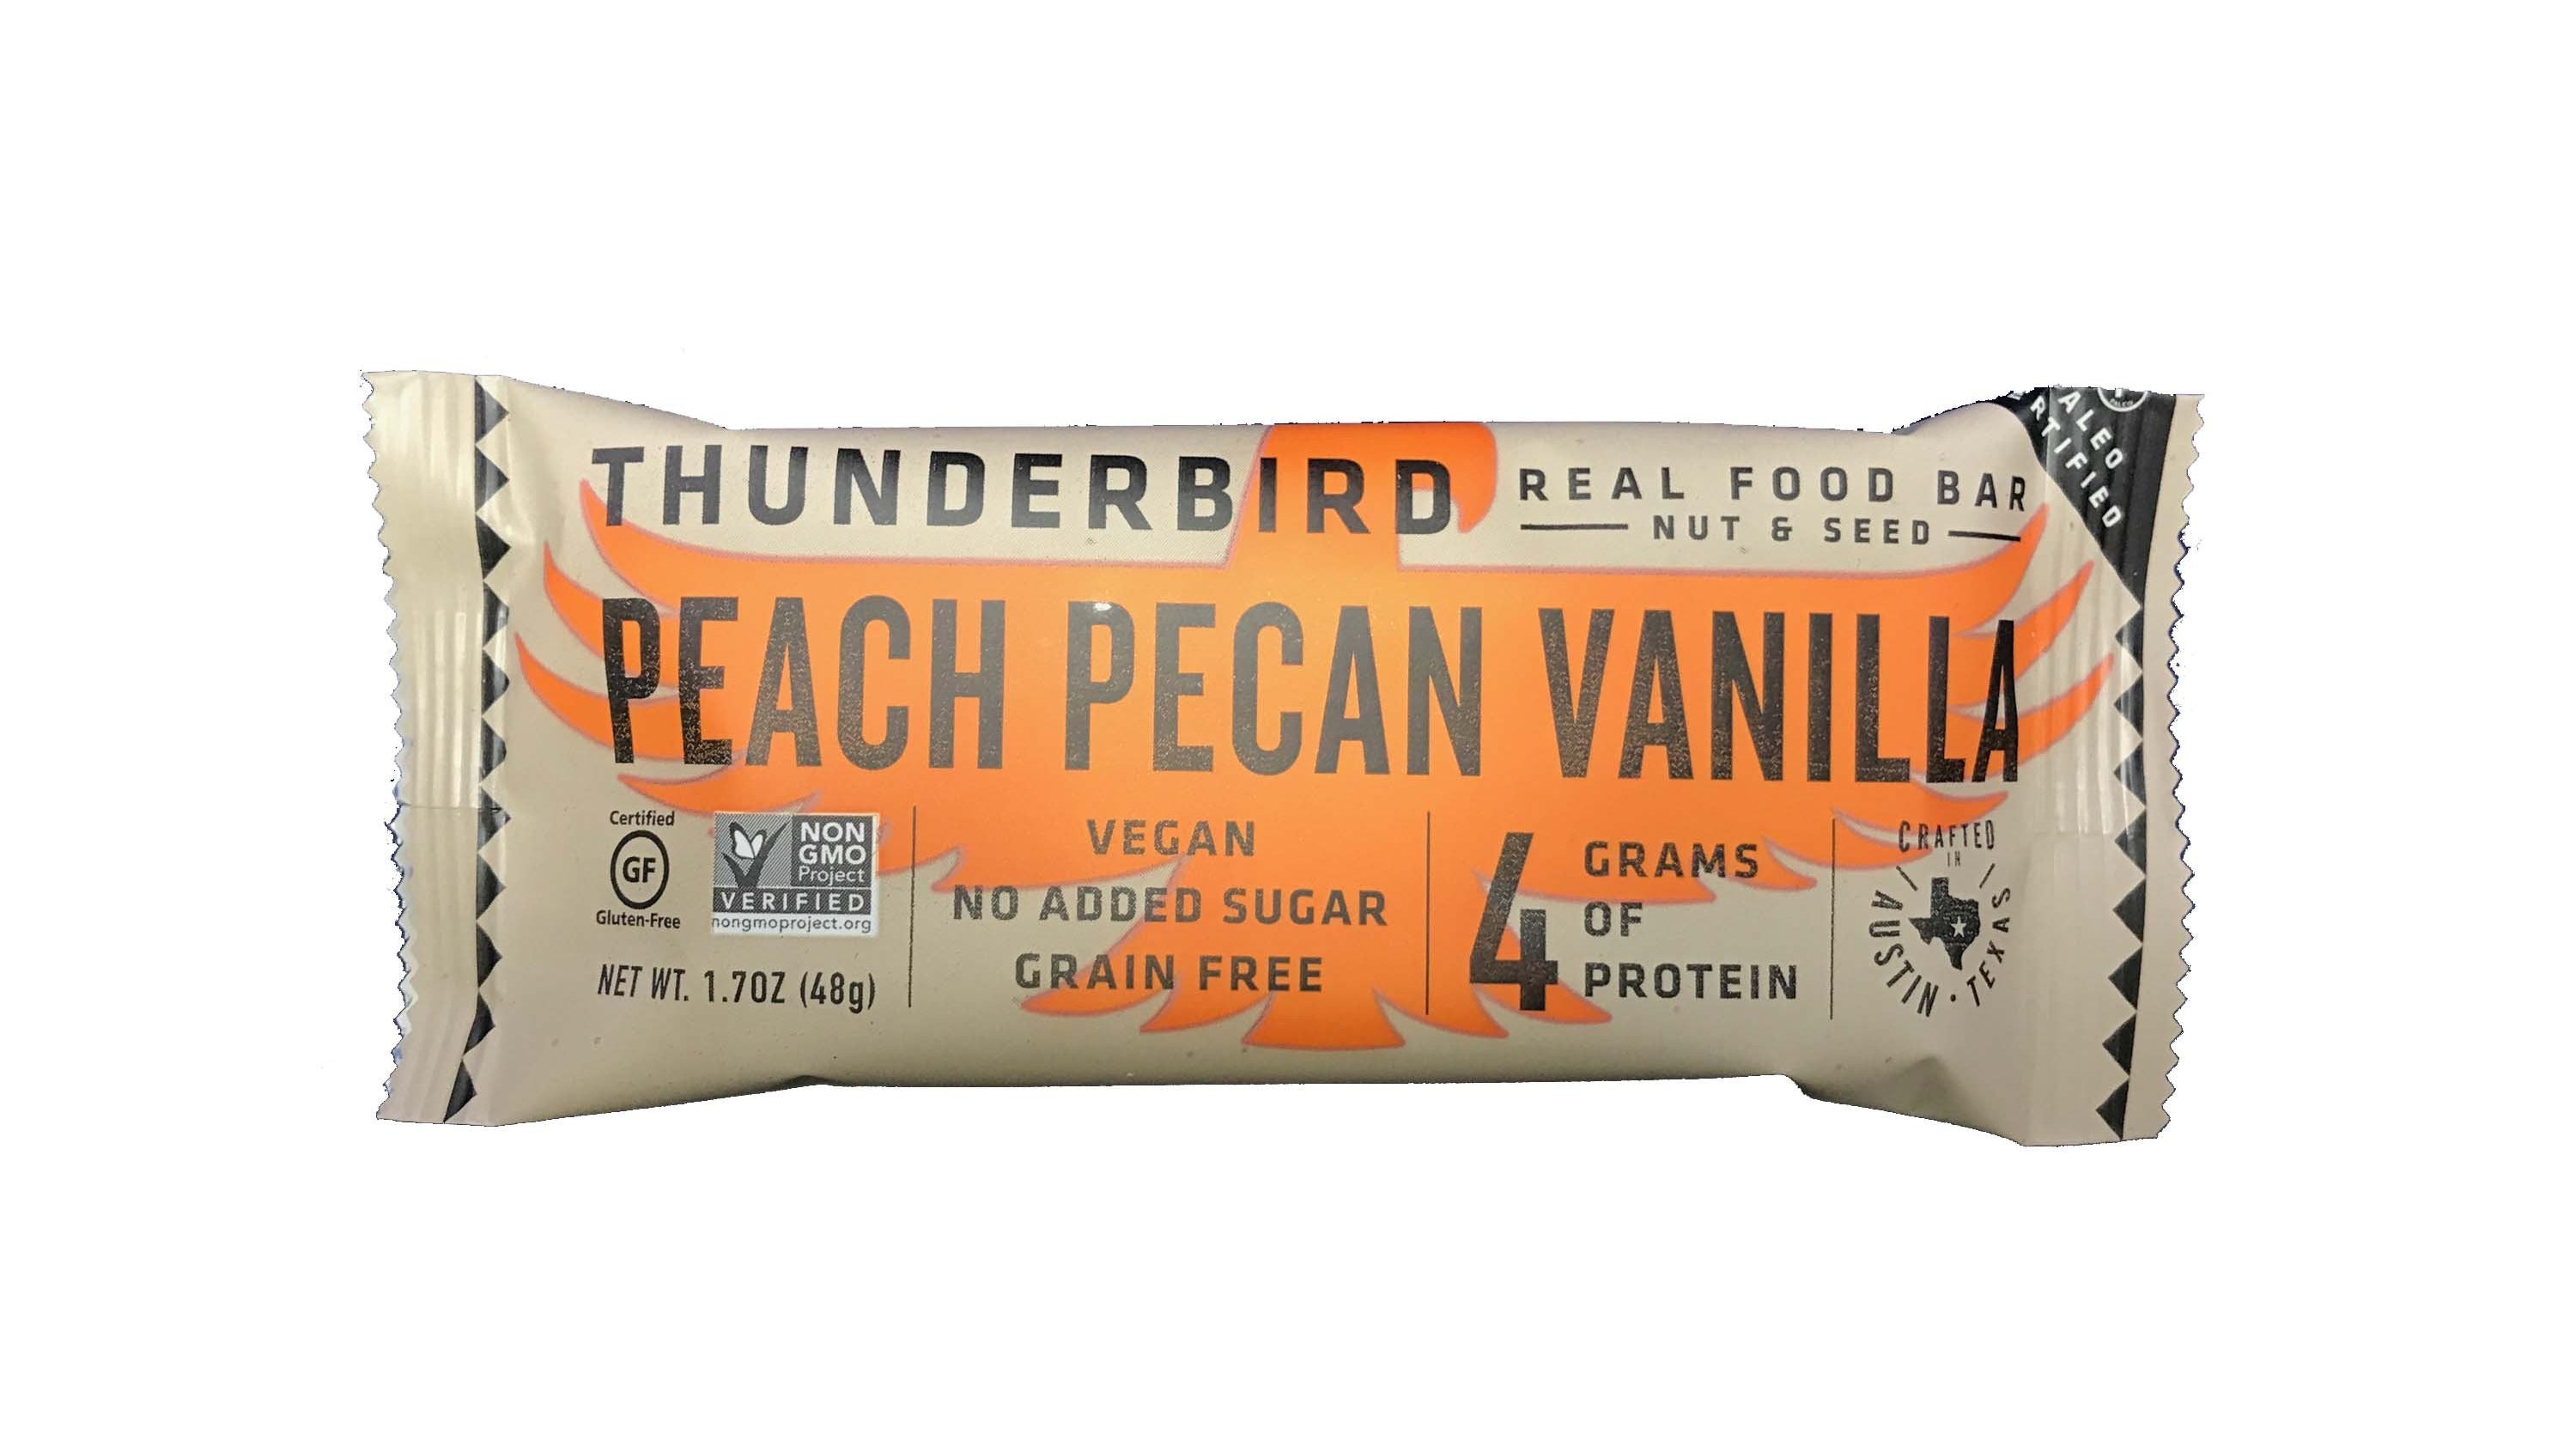 When summer gives you peaches, make a new thunderbird bar